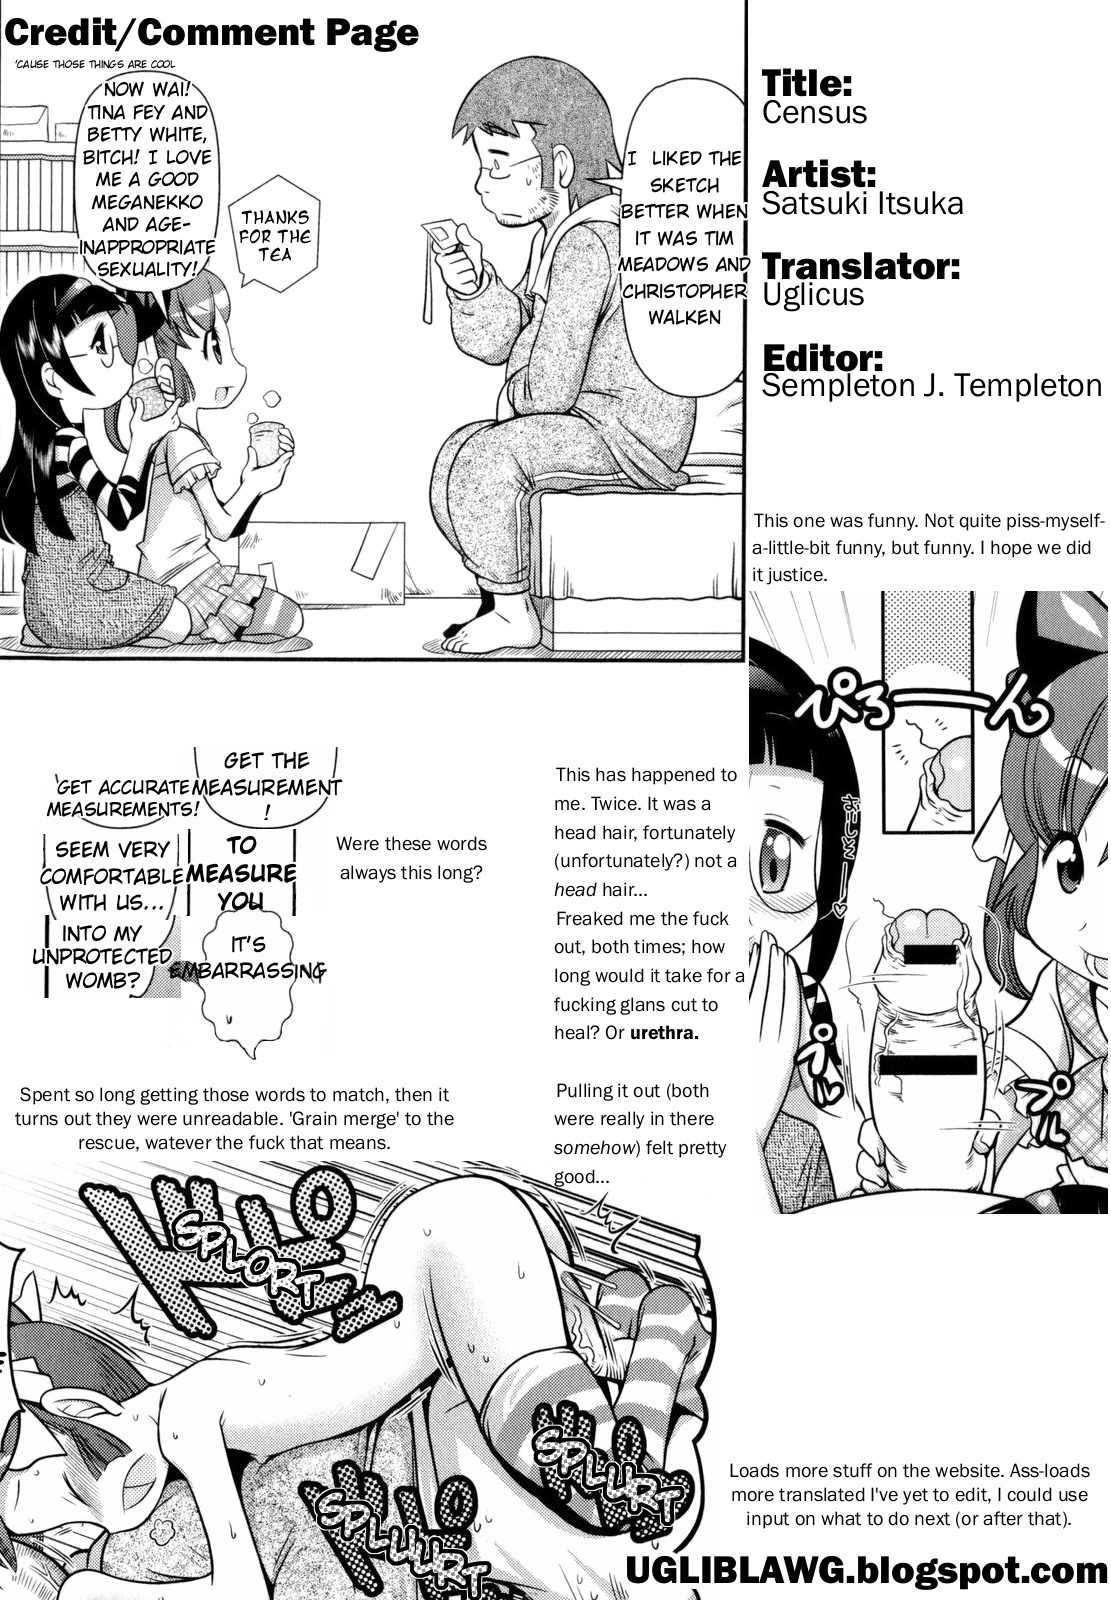 [Satsuki Itsuka] Kokusei Chousa (Census) [English] page 17 full